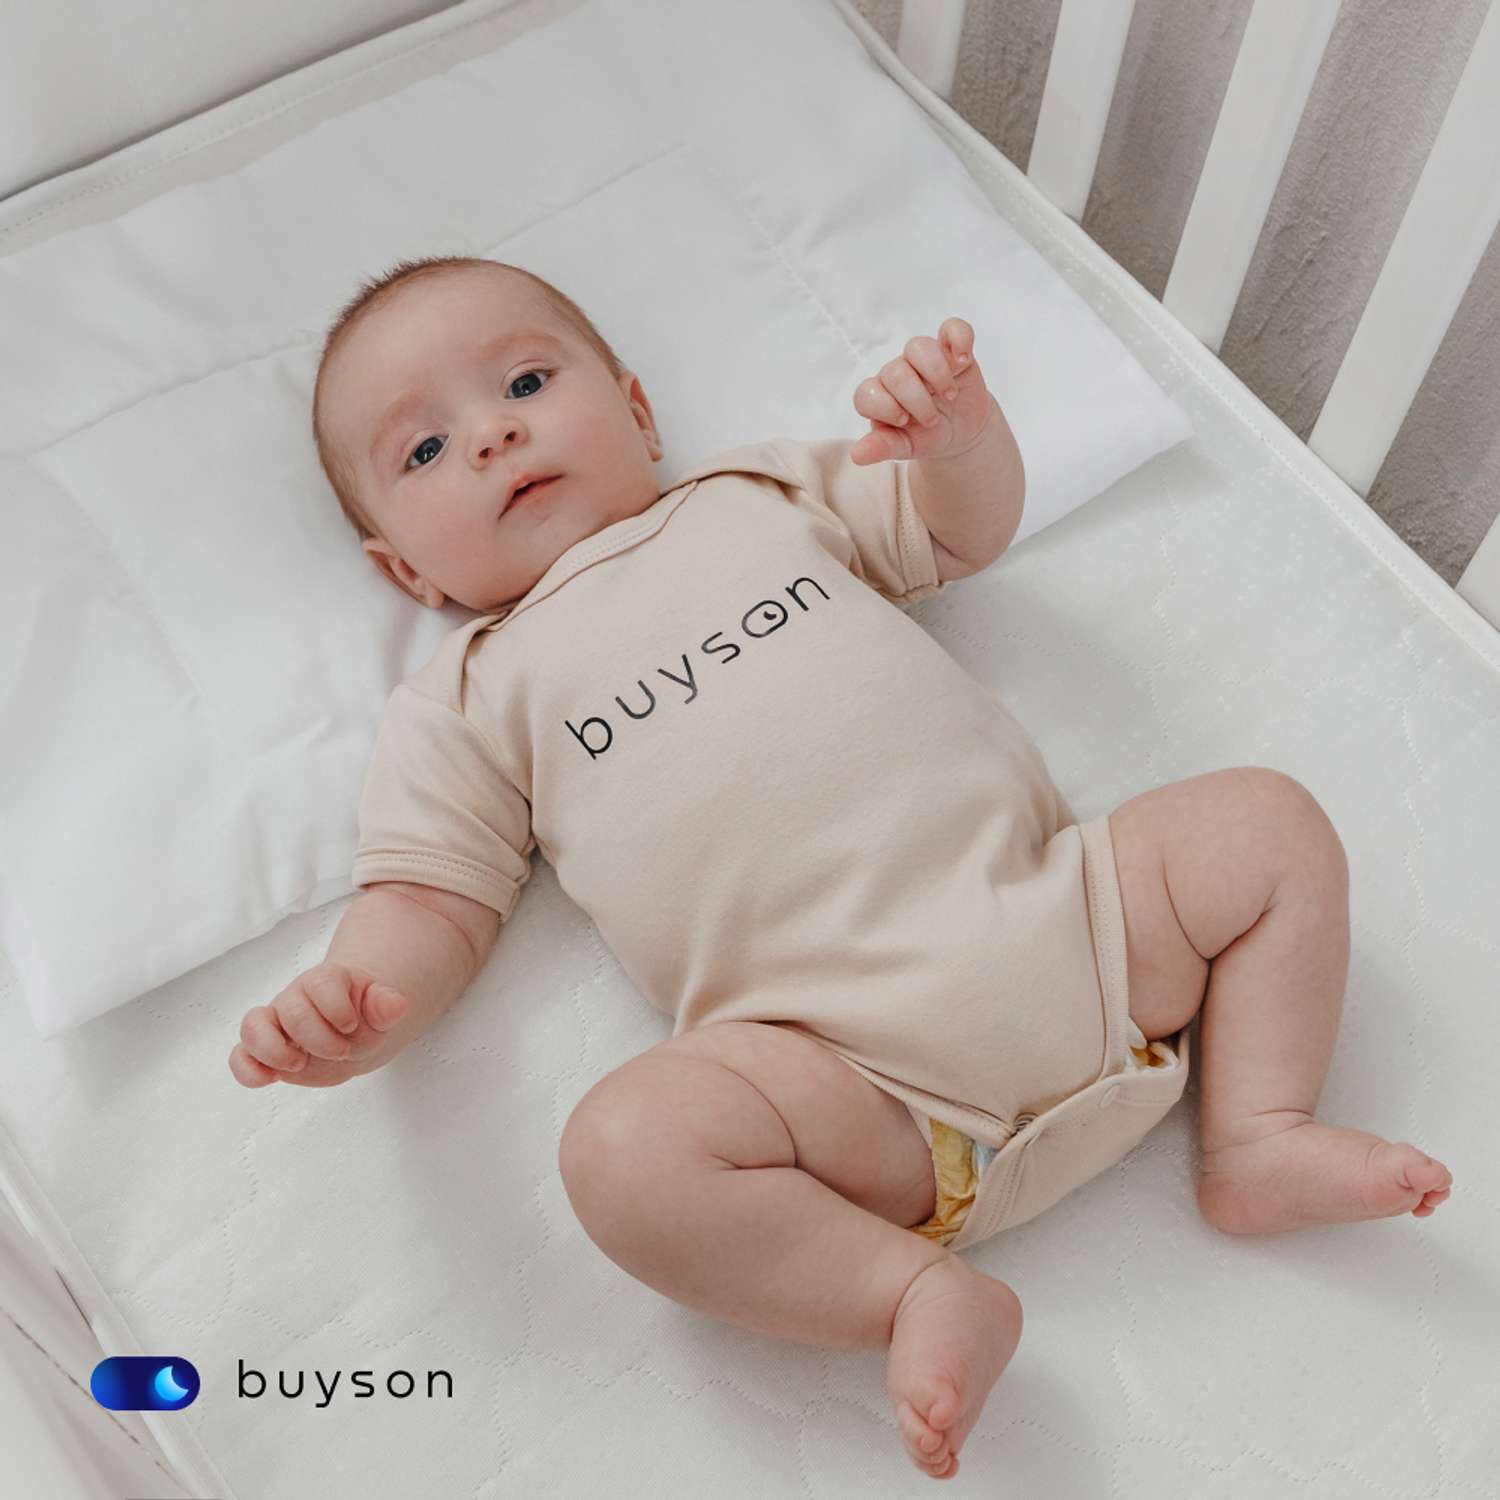 Анатомическая подушка buyson BuyMini для новорожденных от 0 до 3 лет 35х55 см высота 3 см - фото 7